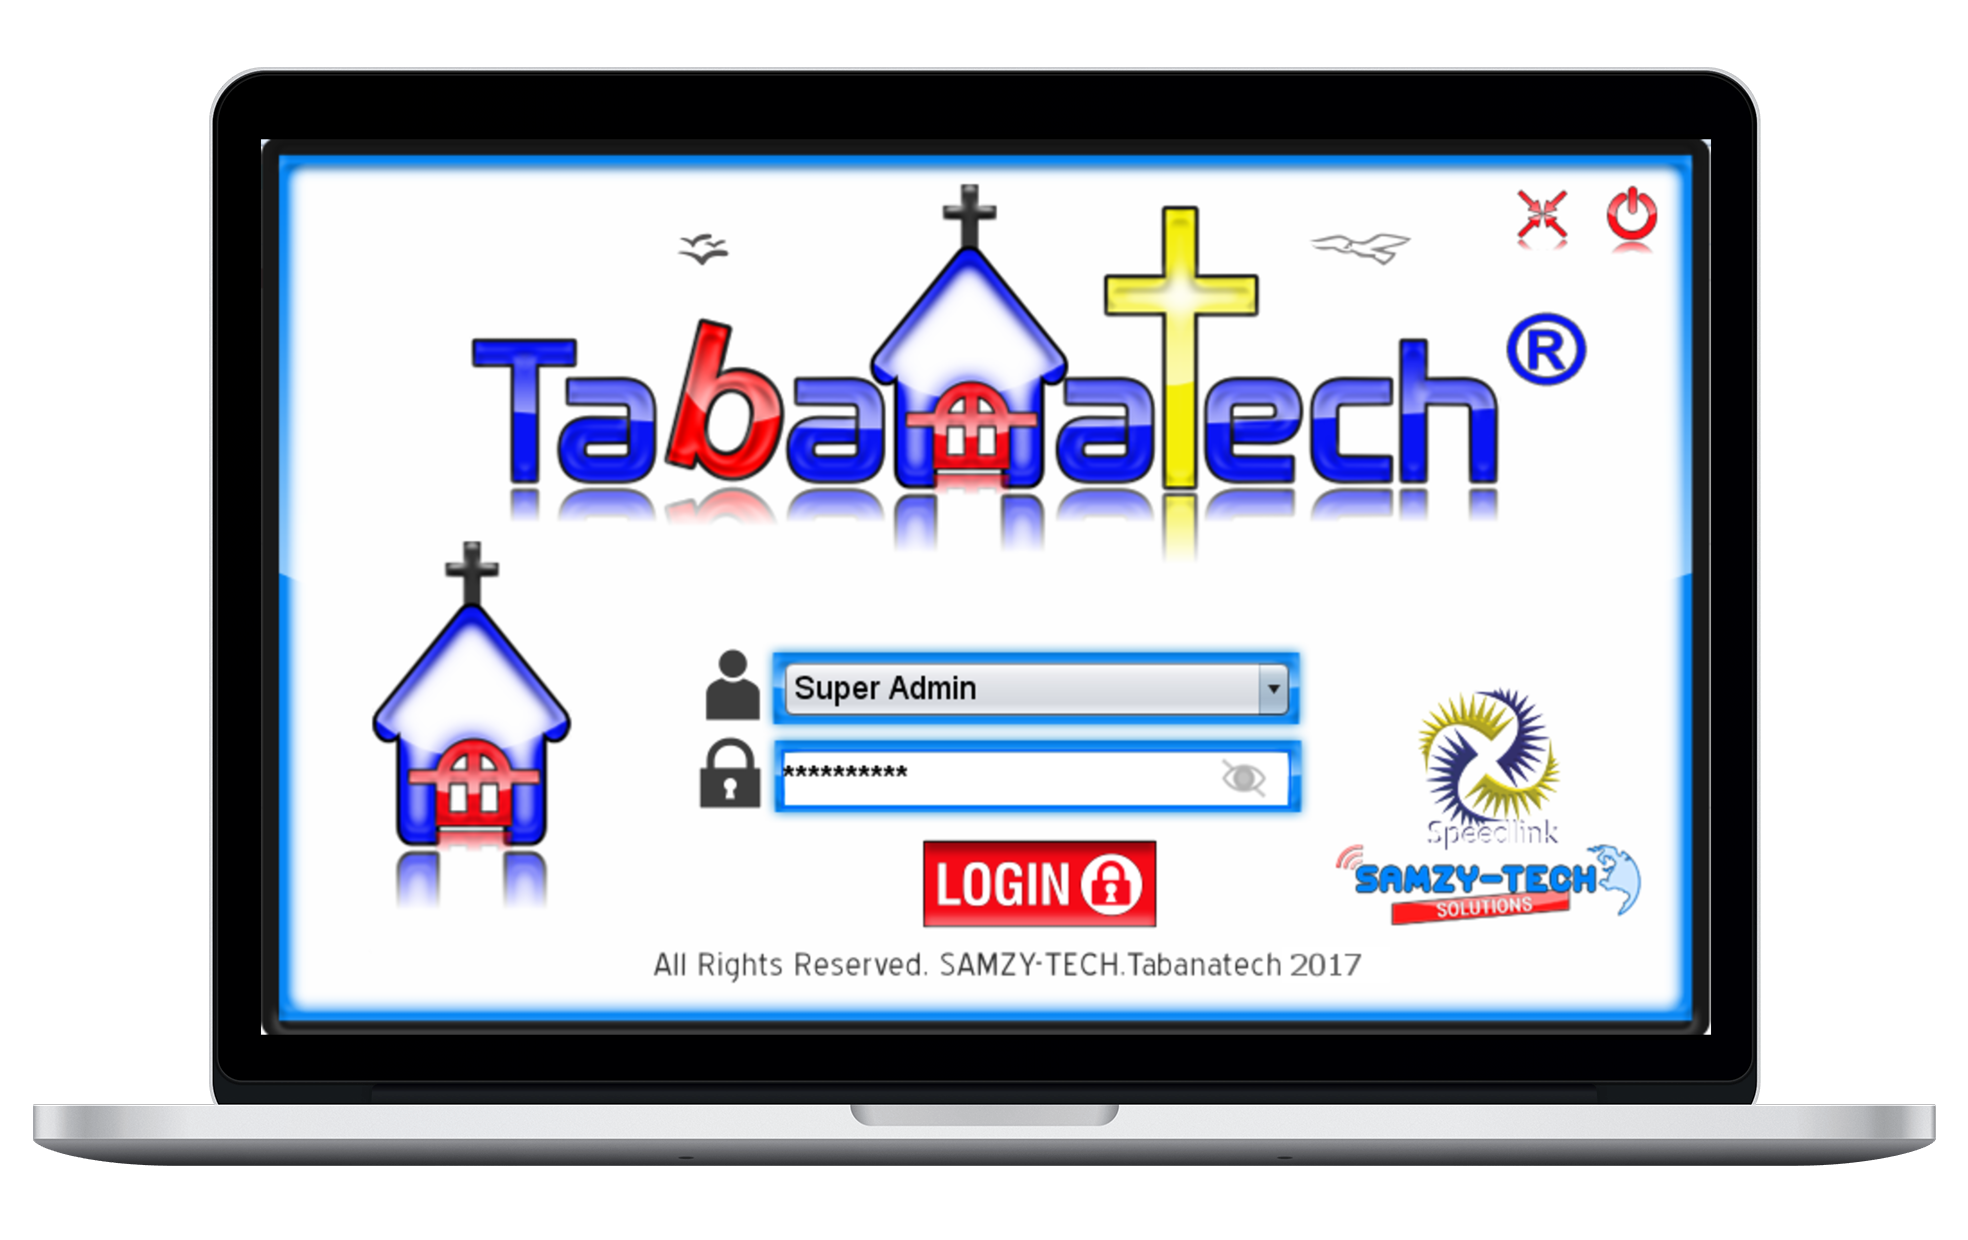 Tabanatech - Church Management Software (Desktop Version)